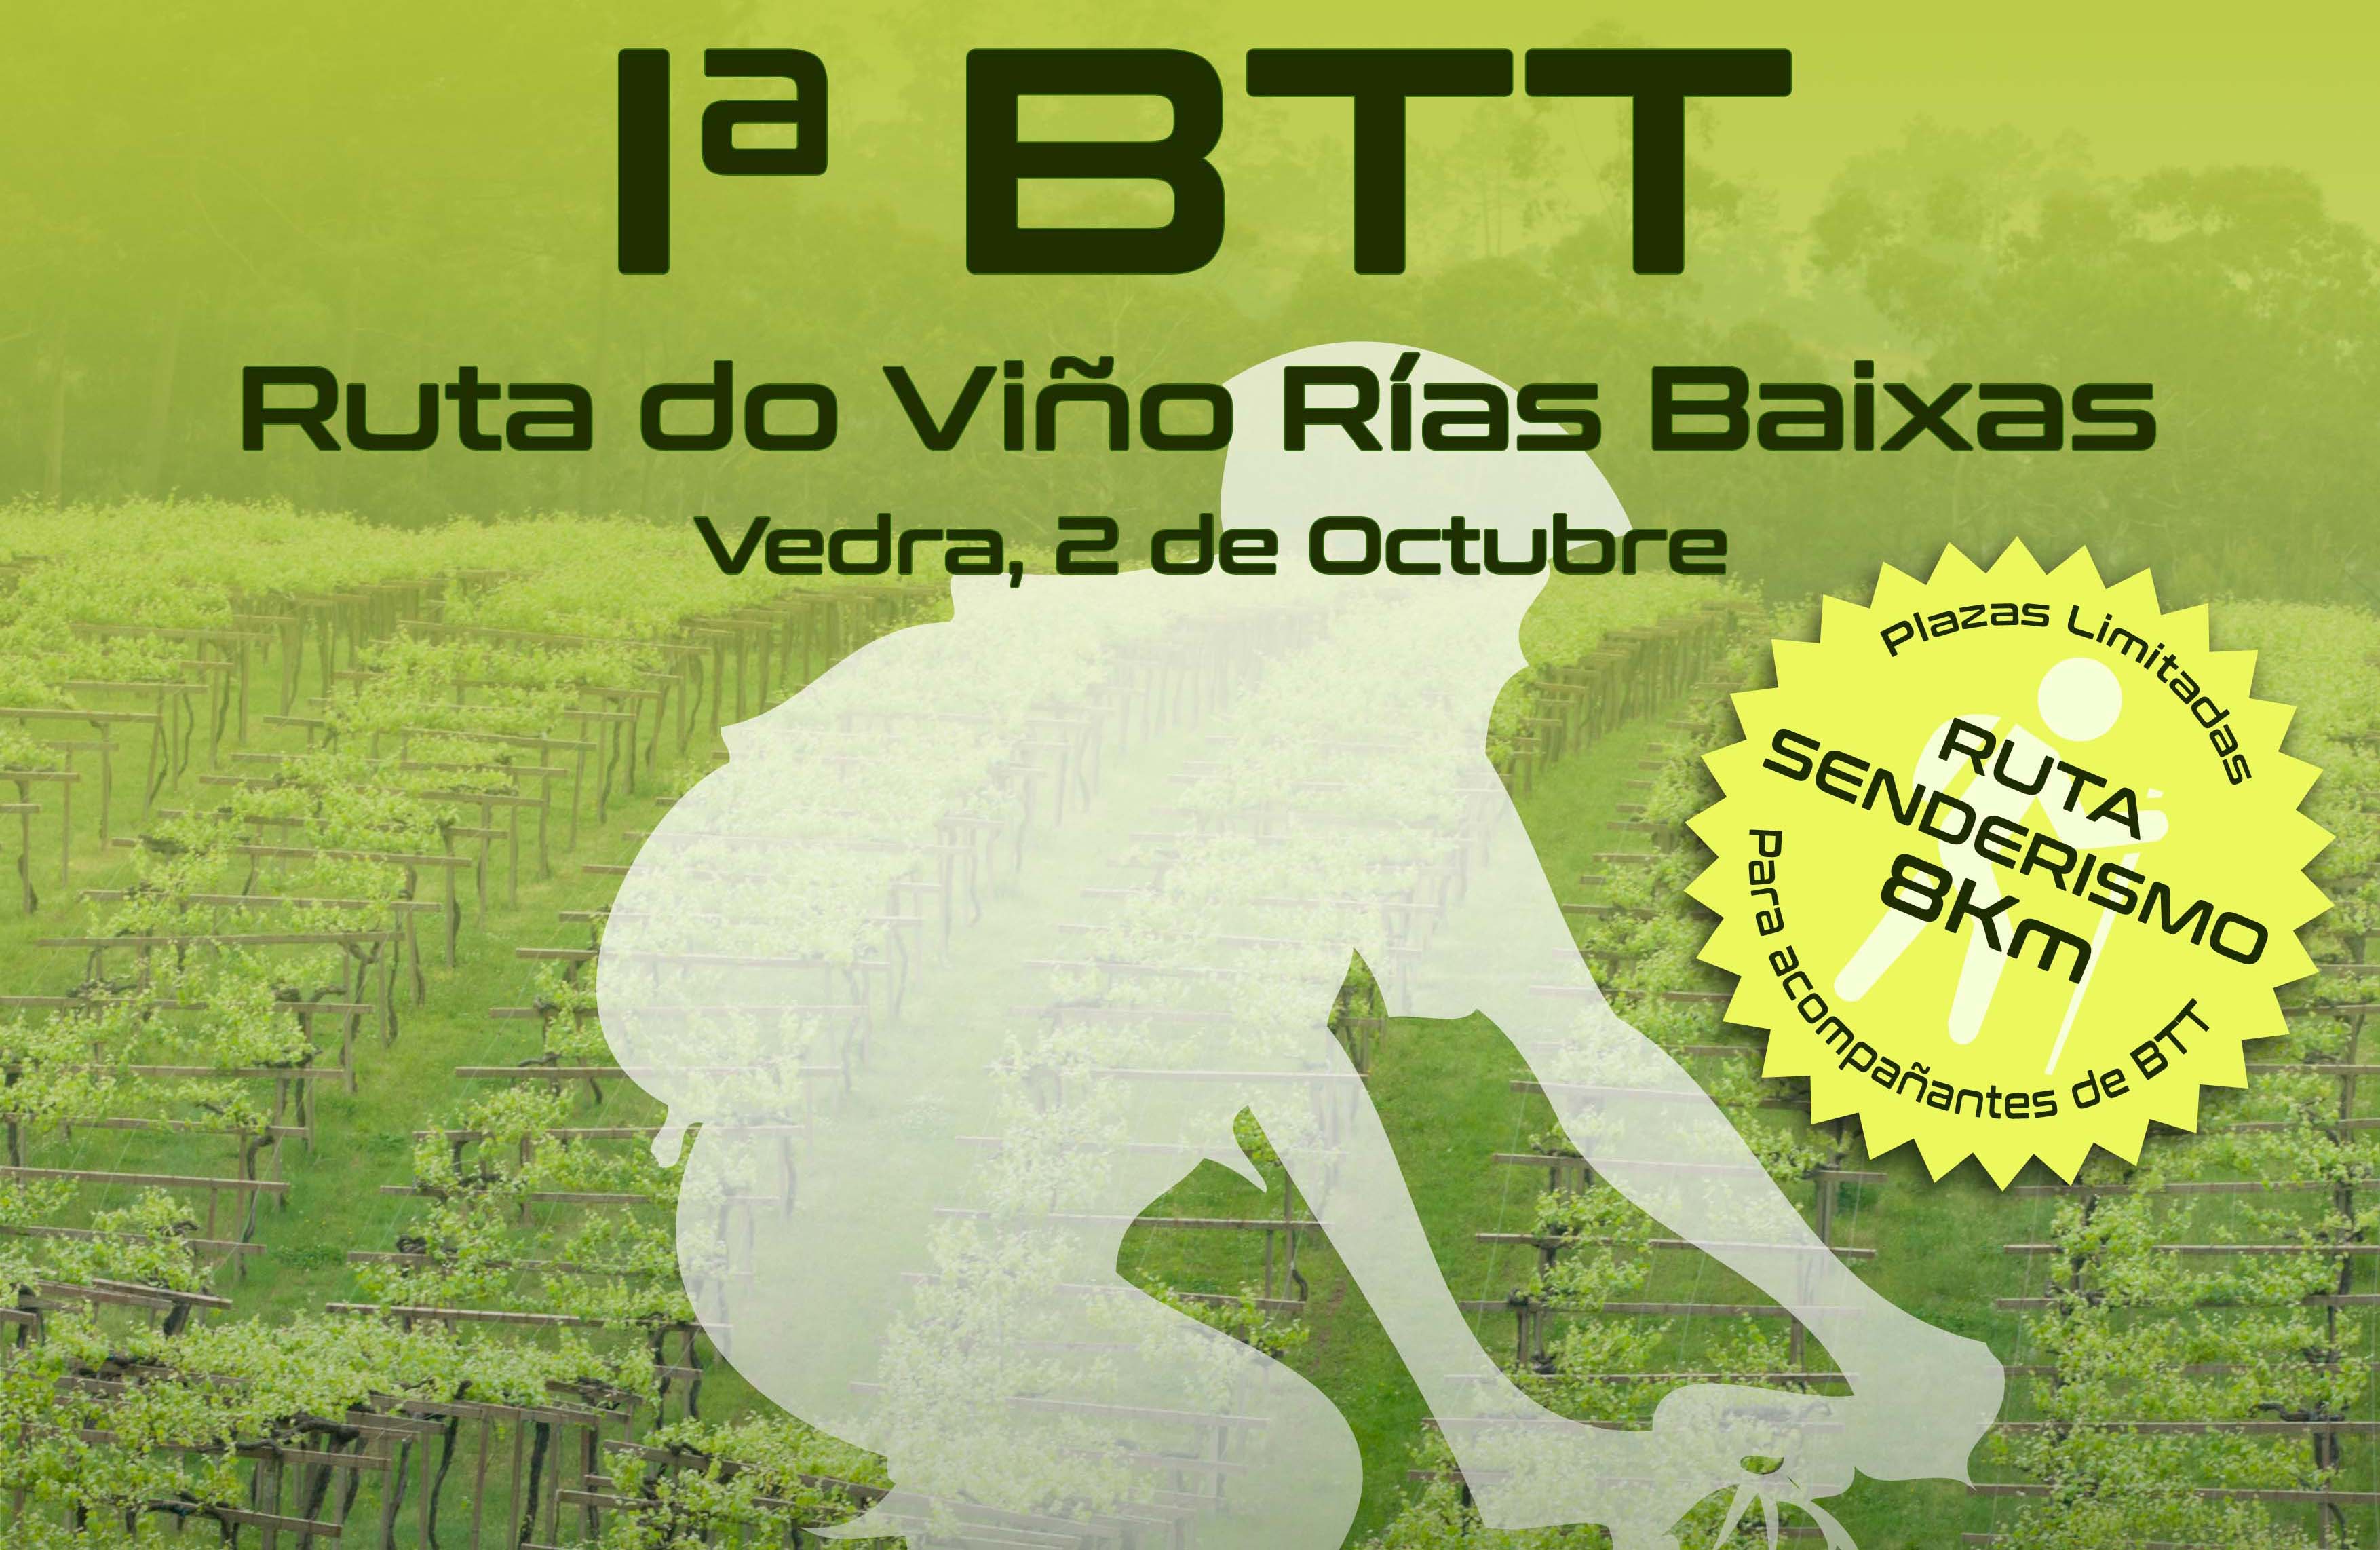 La 1ª BTT Ruta do Viño Rías Baixas que se celebra este domingo 2 de octubre en Vedra se acerca ya a las 200 inscripciones